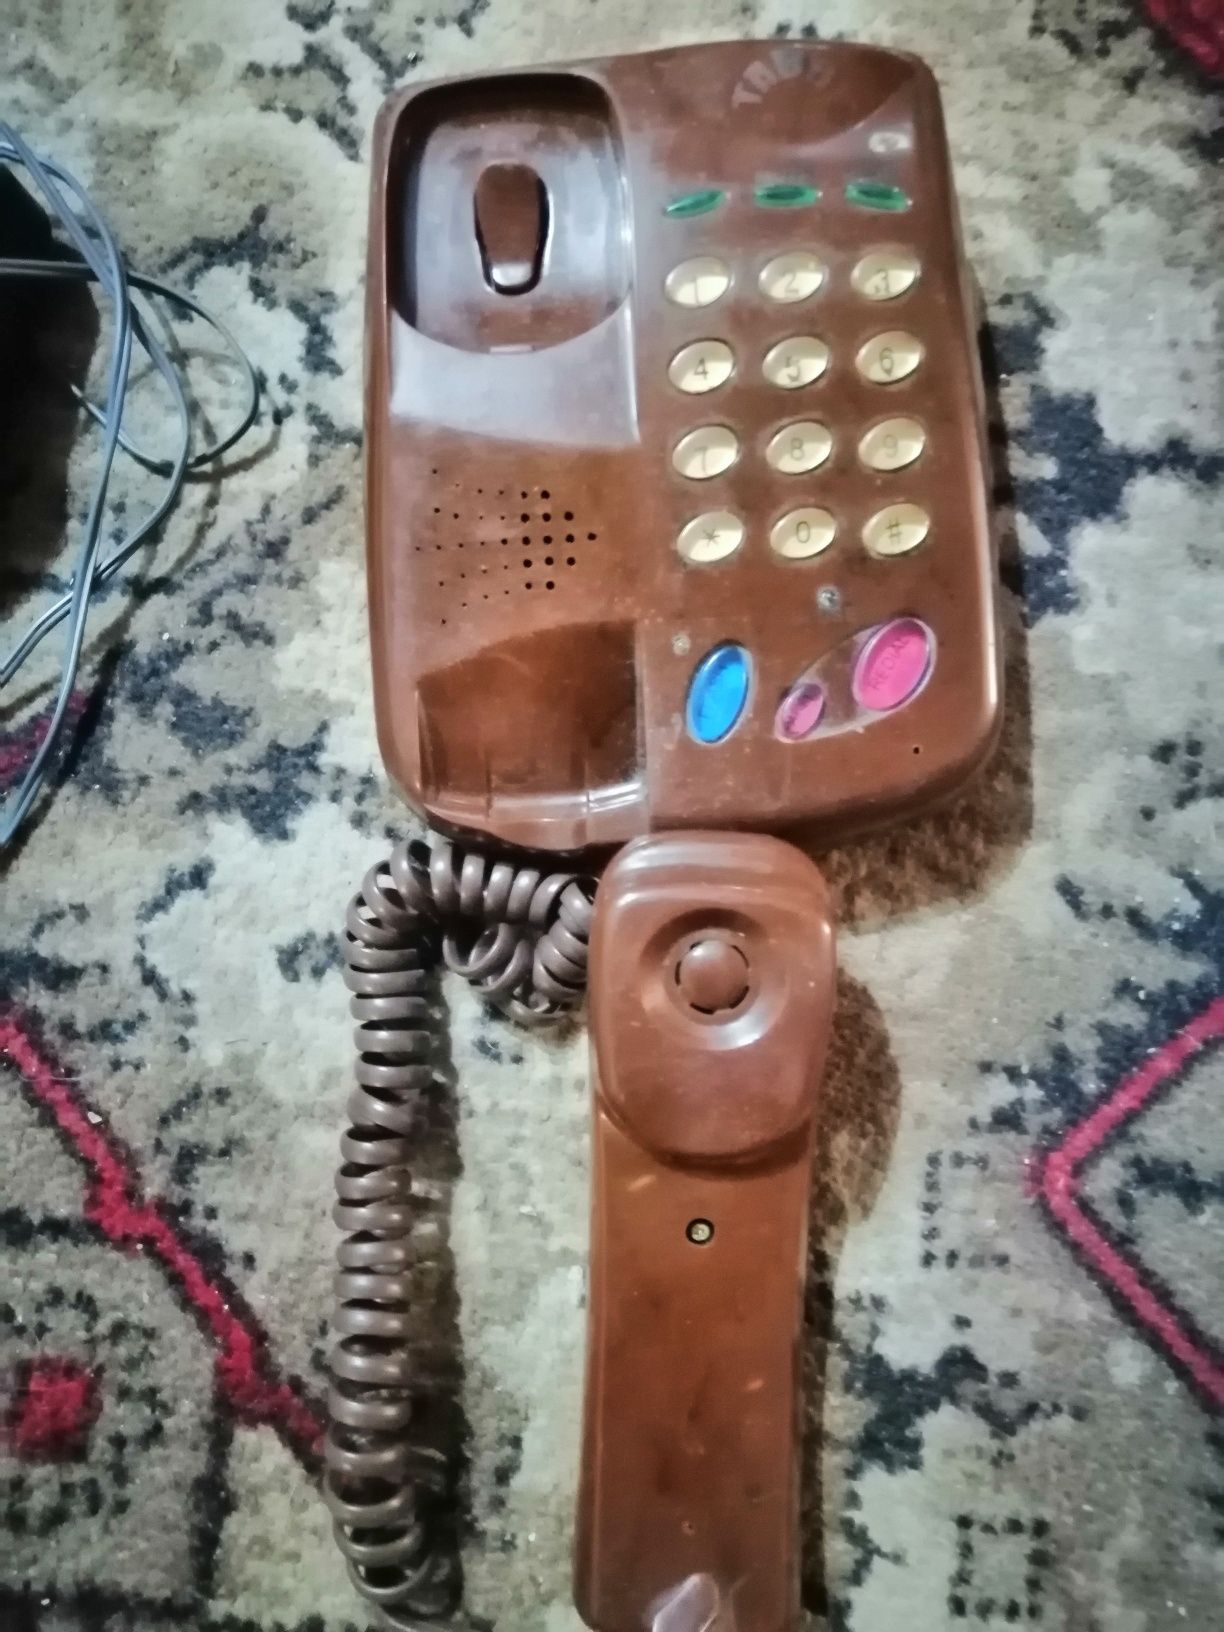 Телефон стационарный